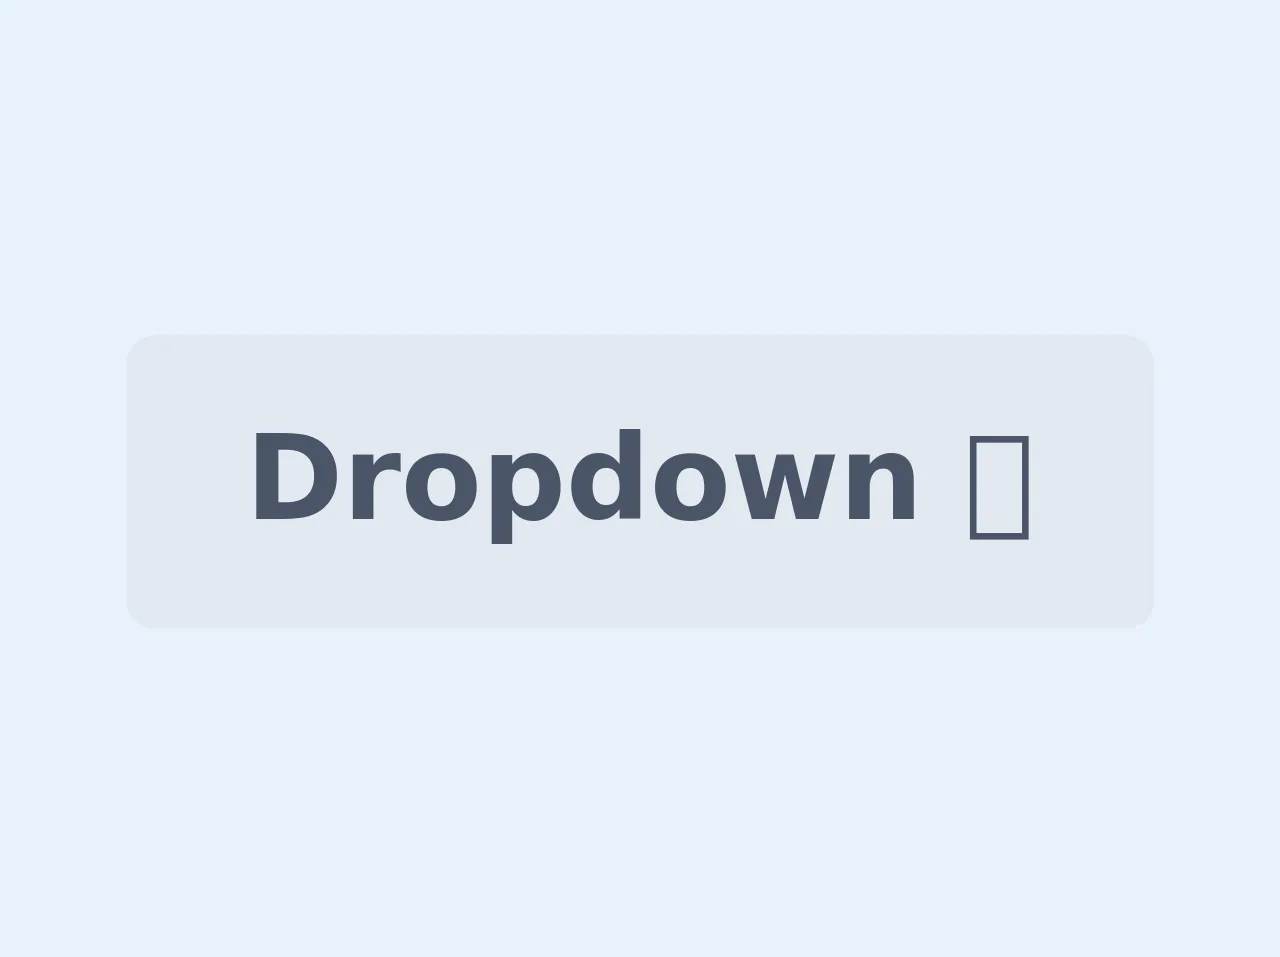 Multi-Level Dropdown